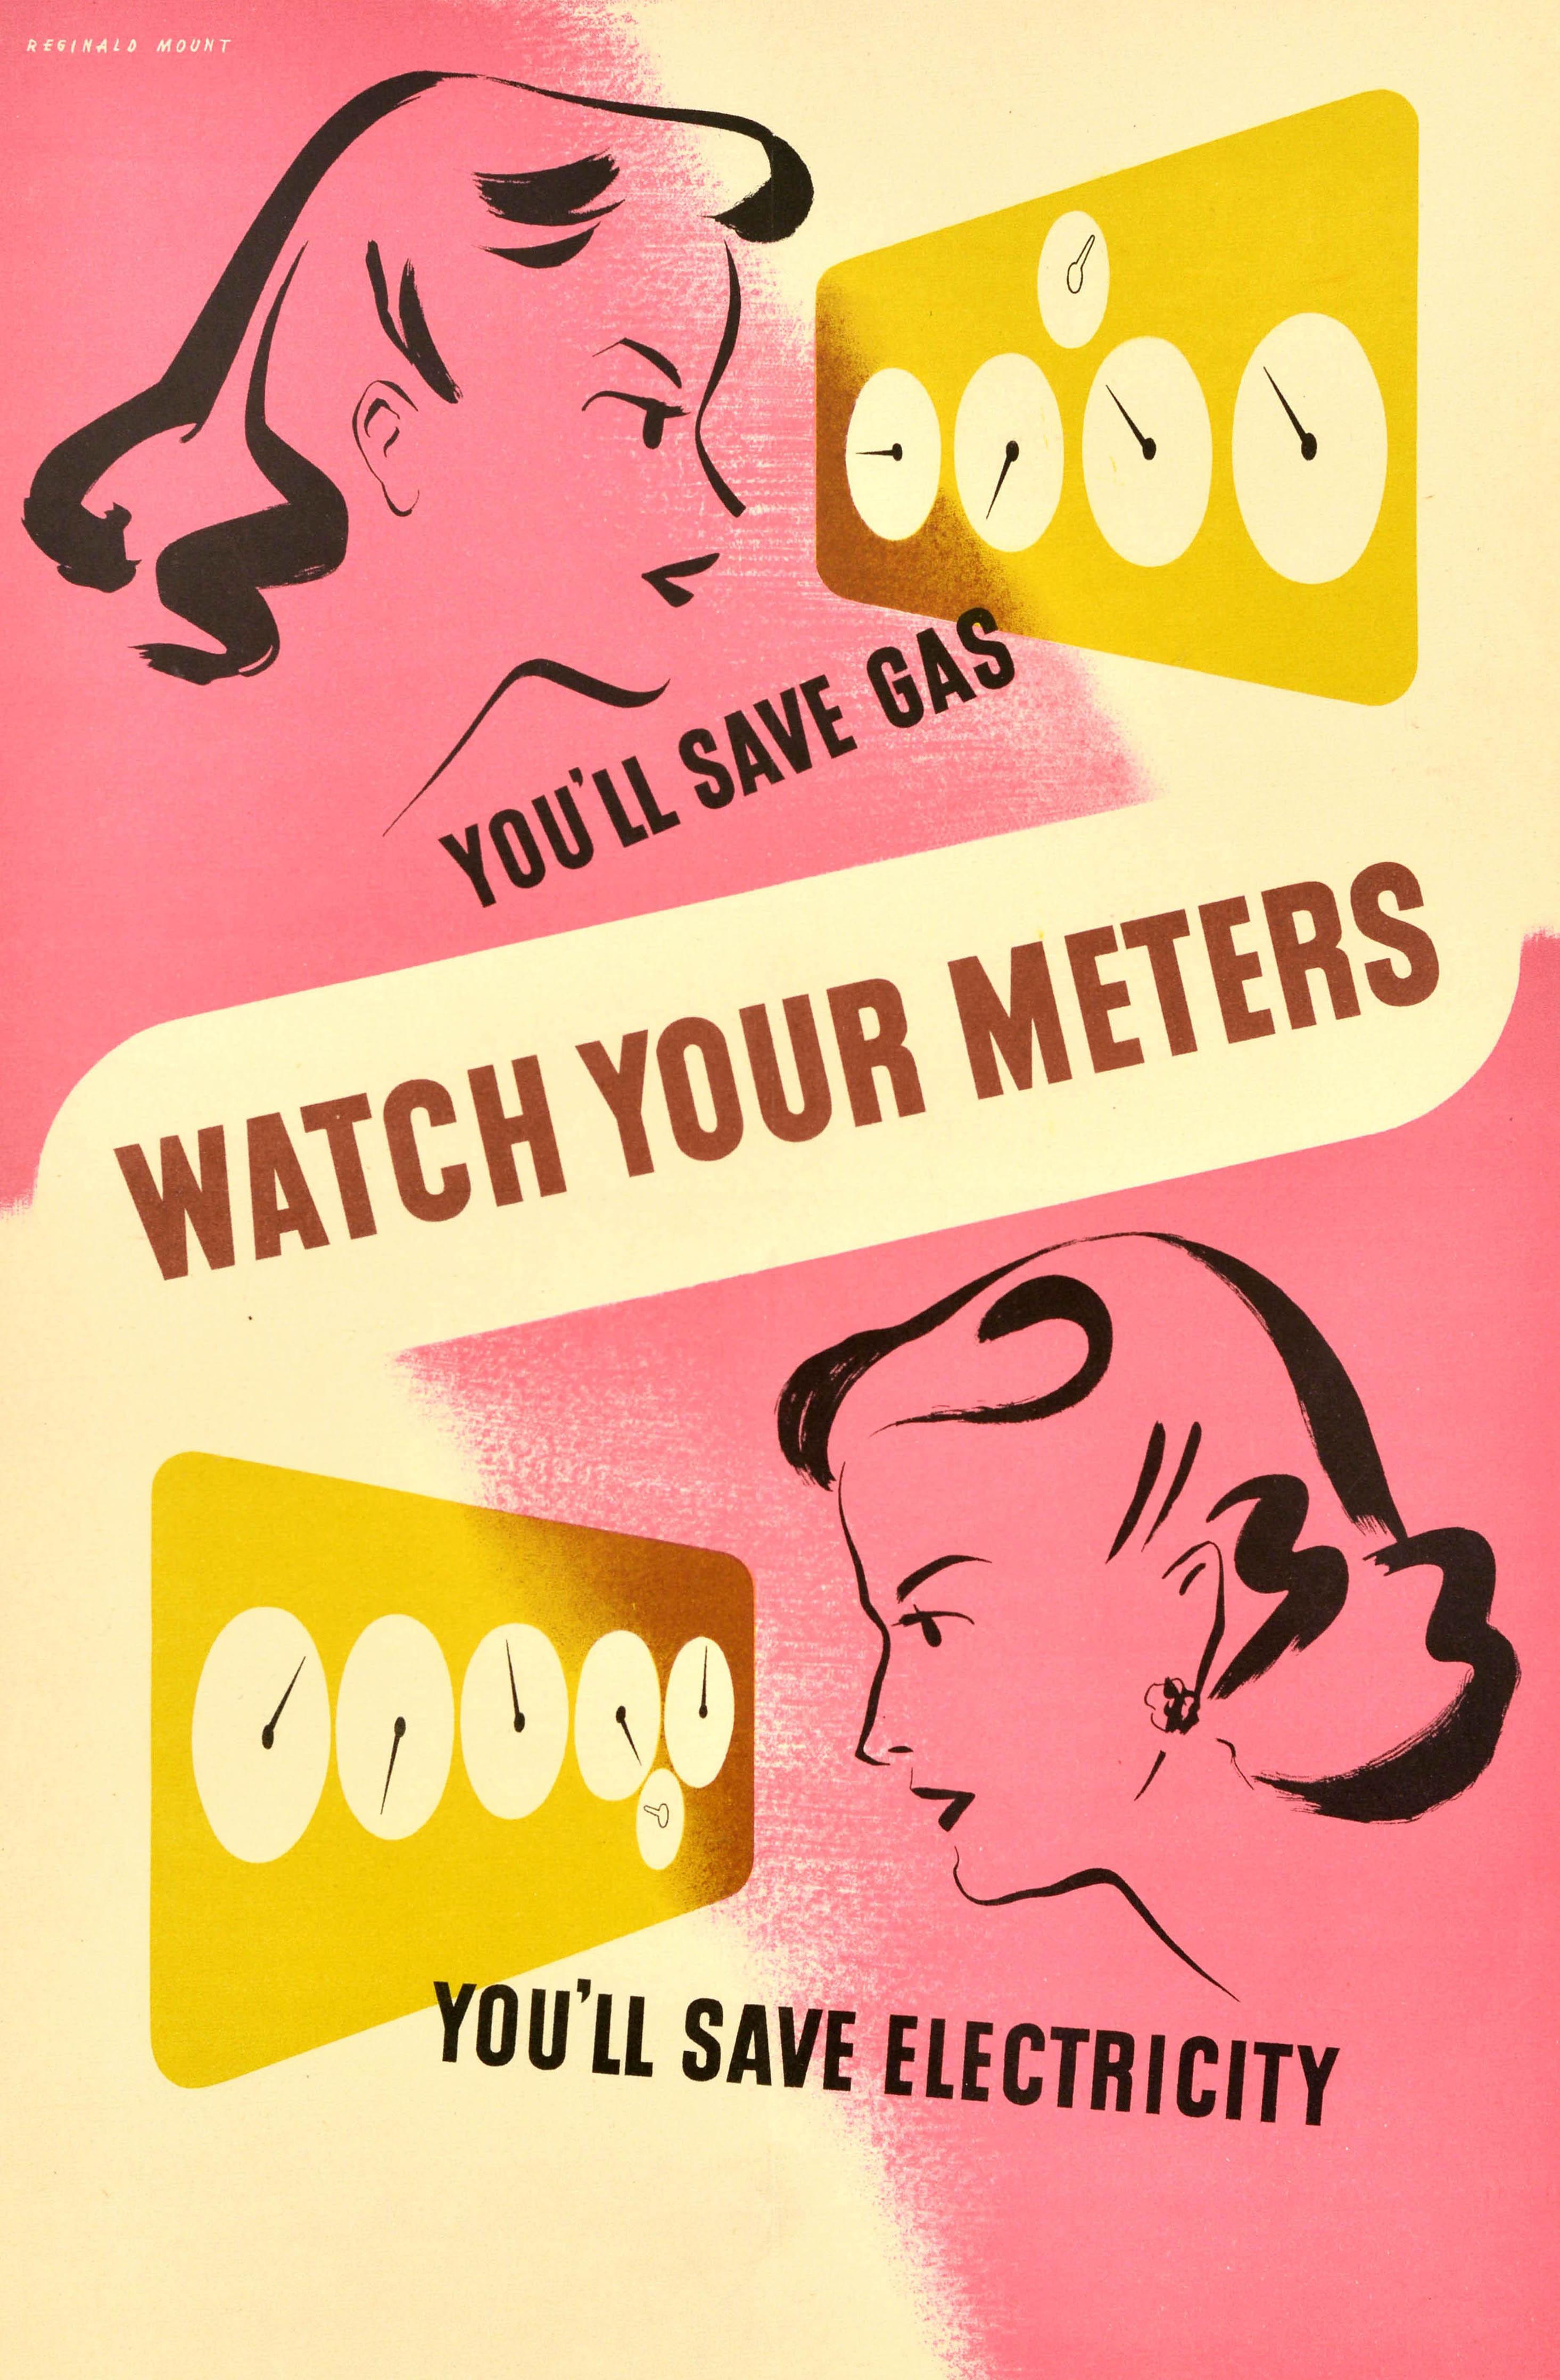 Original Vintage War Energy Saving Gas Propaganda Poster Watch Your Meters WWII (Affiche de propagande pour l'économie d'énergie et de gaz) - Print de Reginald Mount